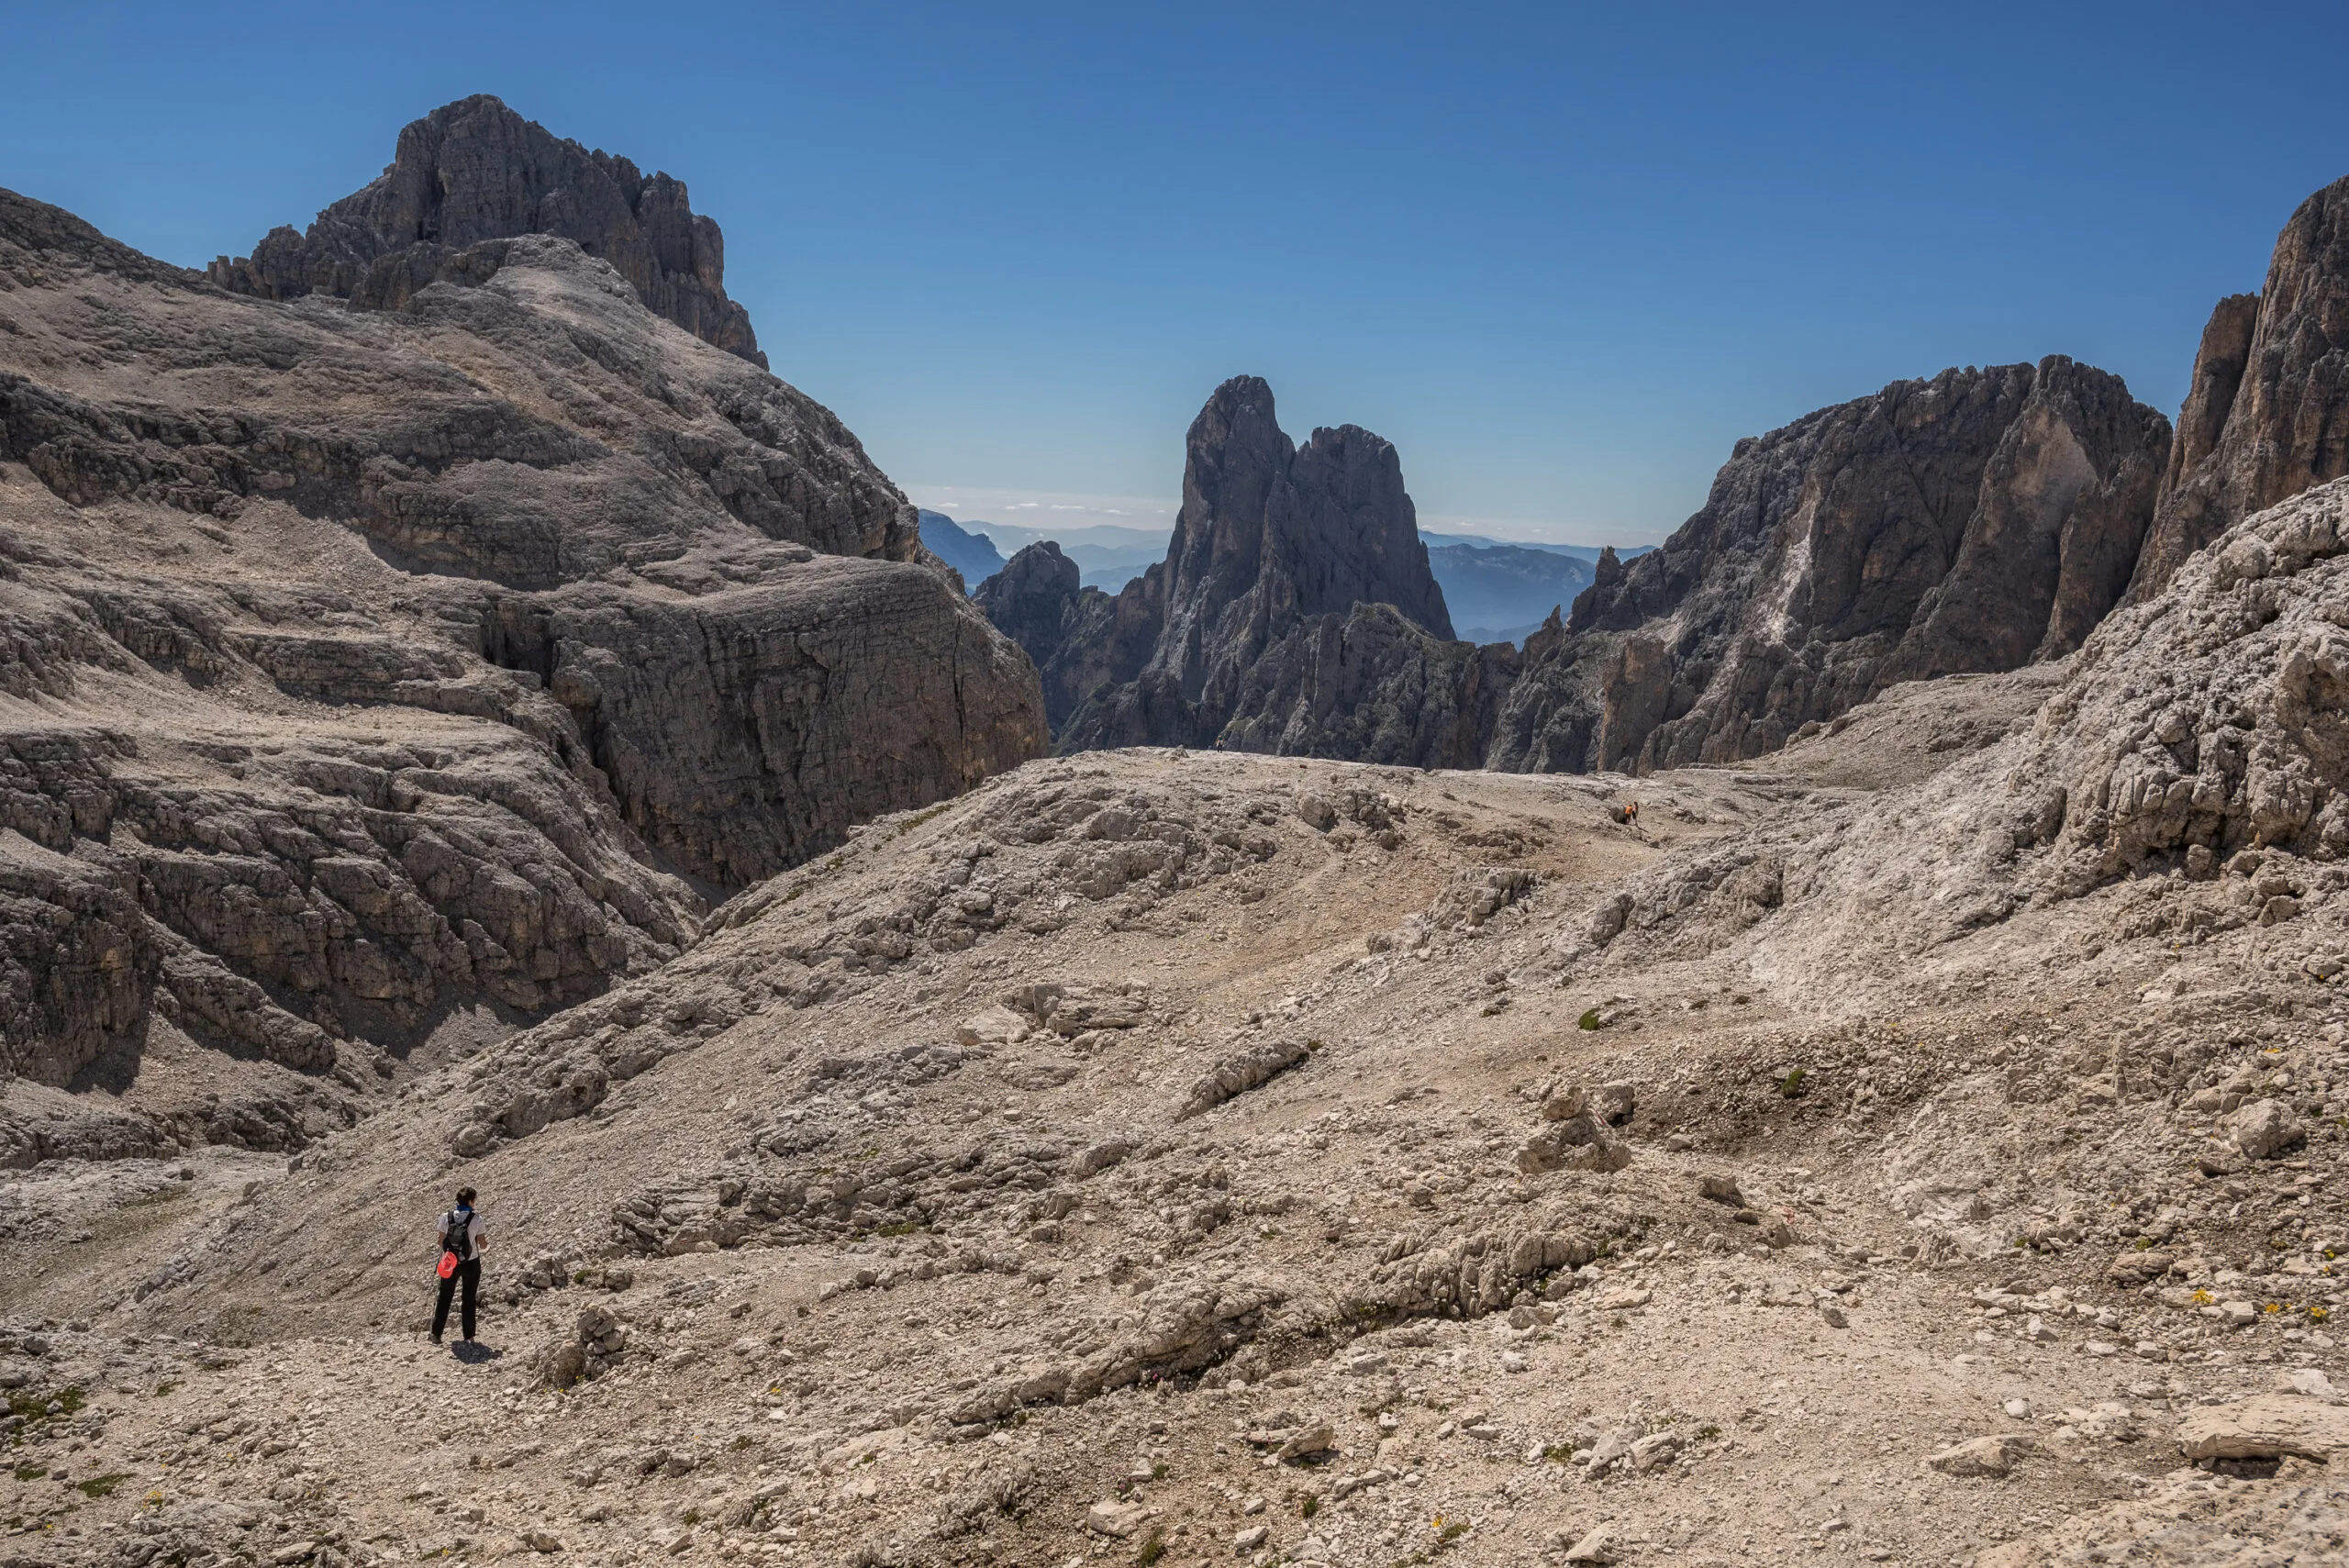 Gipfel der Pale di San Martino-Gruppe von links nach rechts, Cima Canali, Cimerlo, Sass Maor, Cima della Madonna, vom Pradidali Basso-Pass aus gesehen, am Fuße des Fradusta-Gletschers, Dolomiten, Italien.